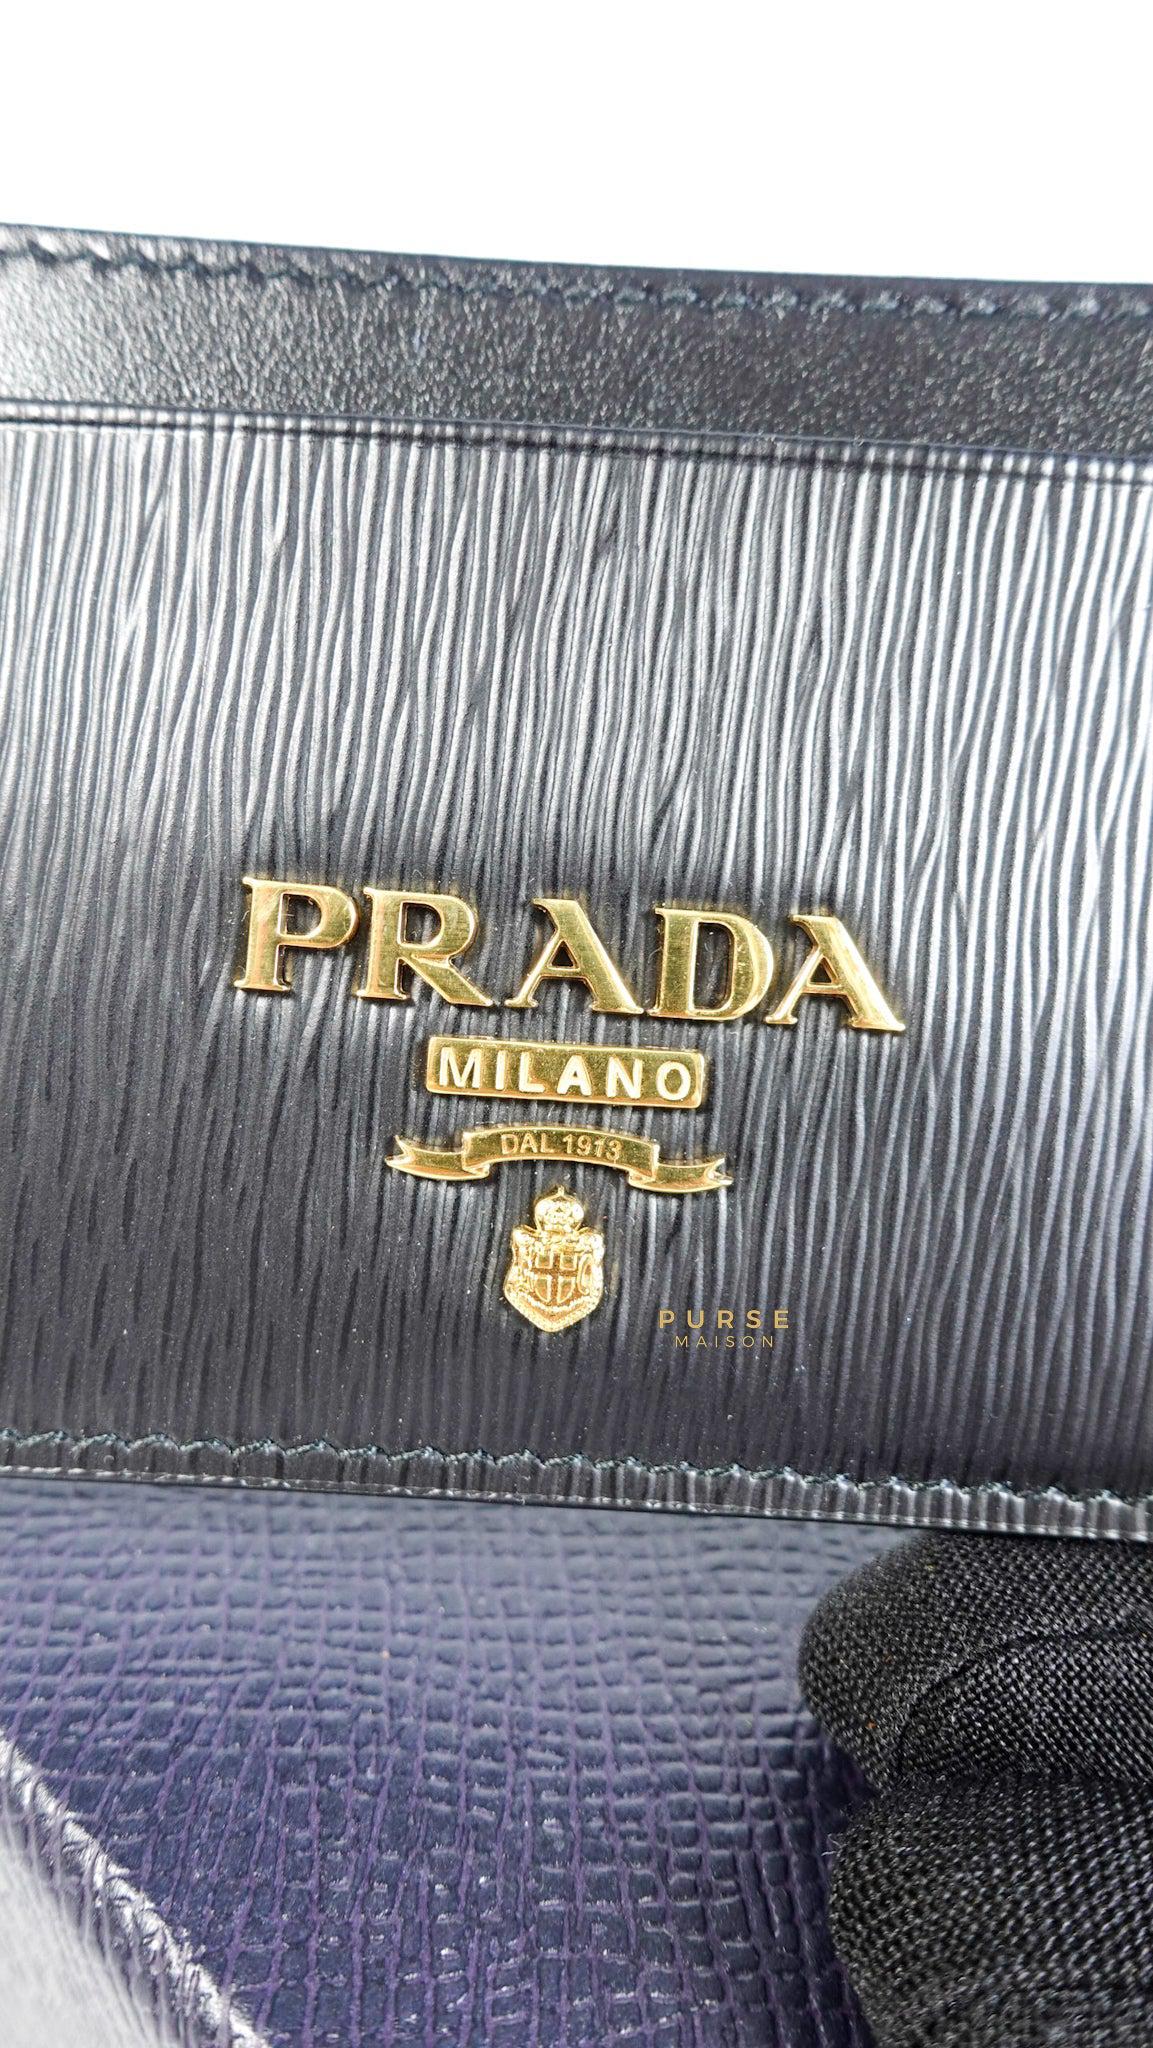 Prada 1MC208 Vitello Card Holder (Black)